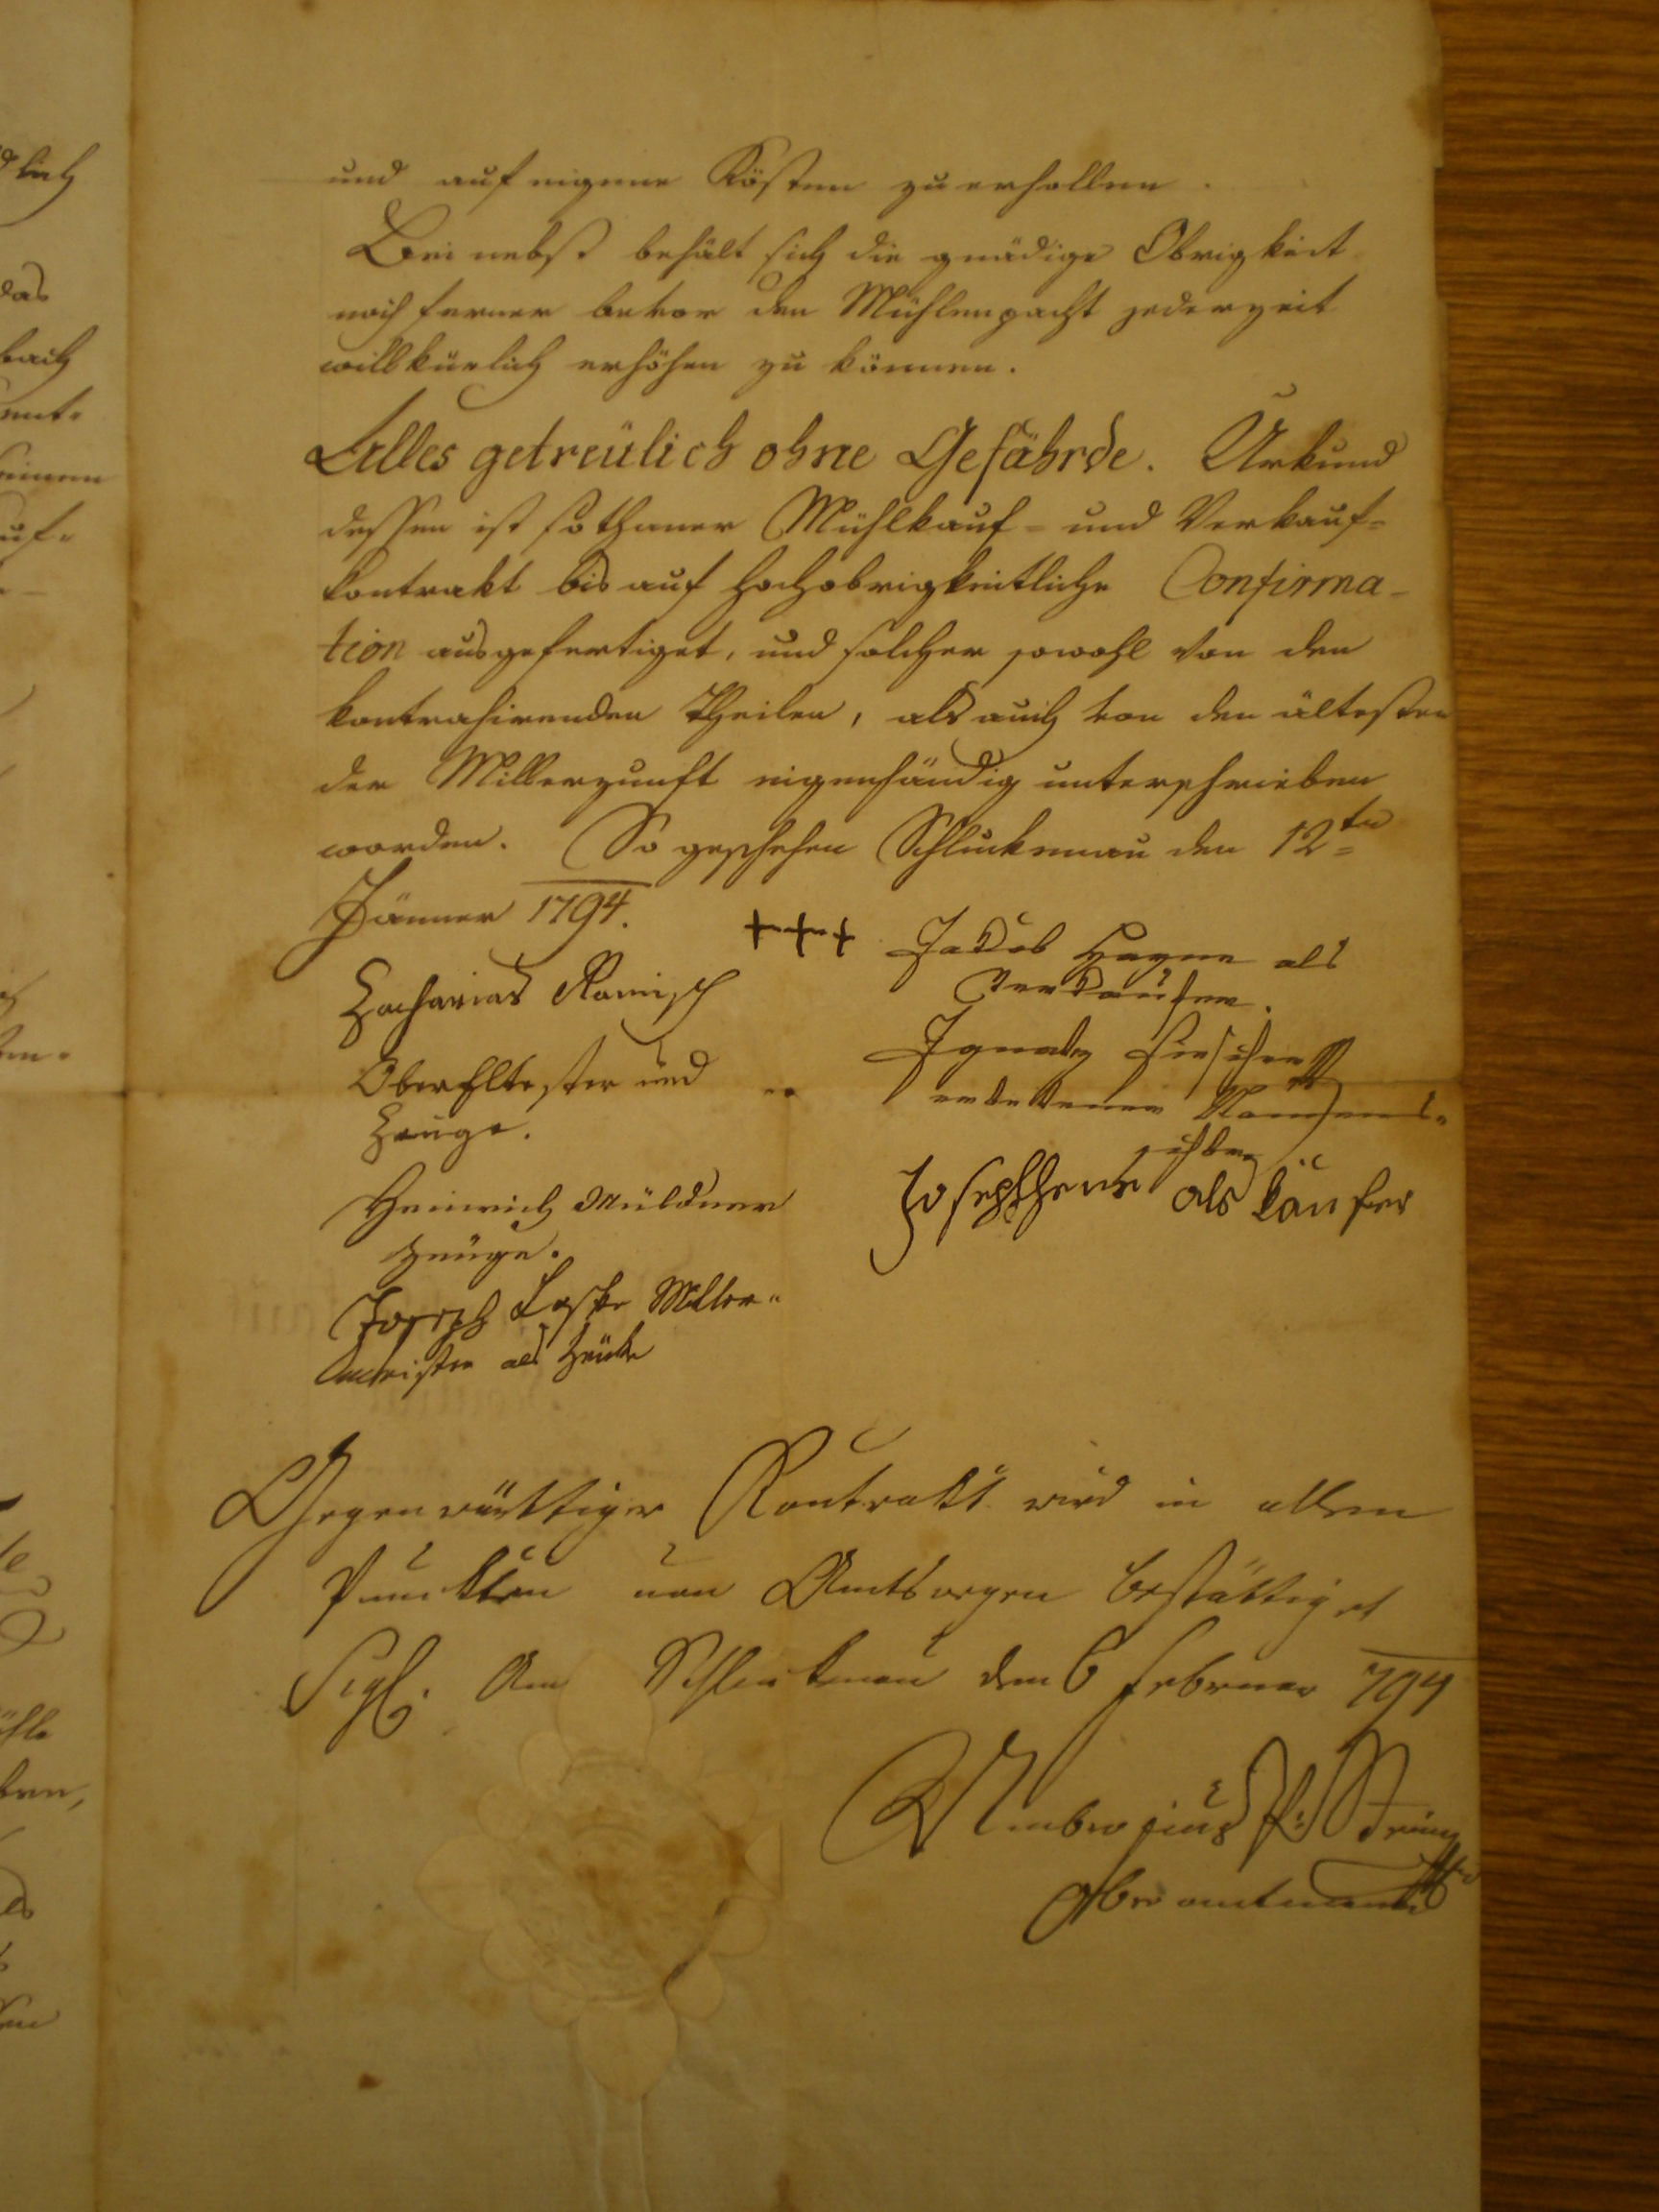 podepsáno ve Šluknově dne 12.1.1794